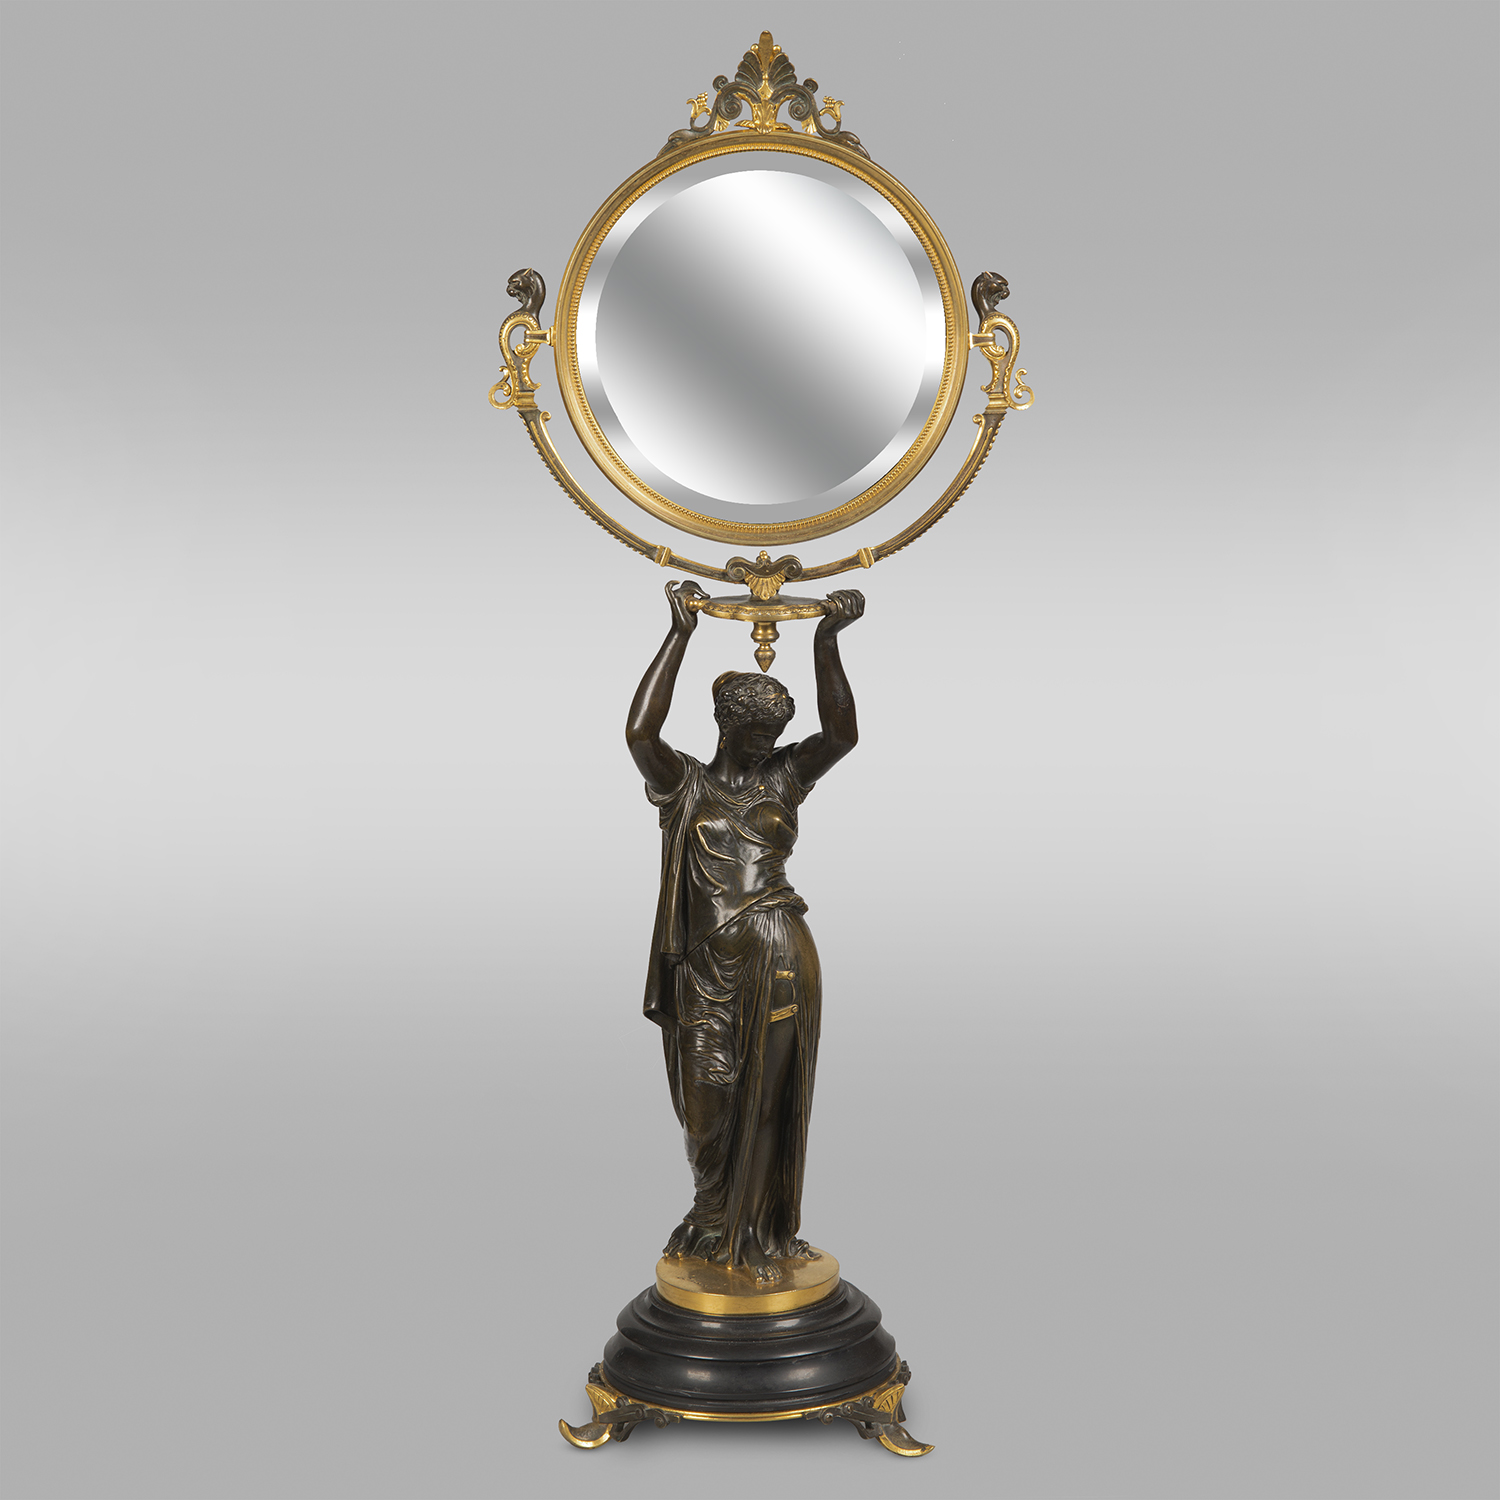 Настольное зеркало с фигурой Одалиски